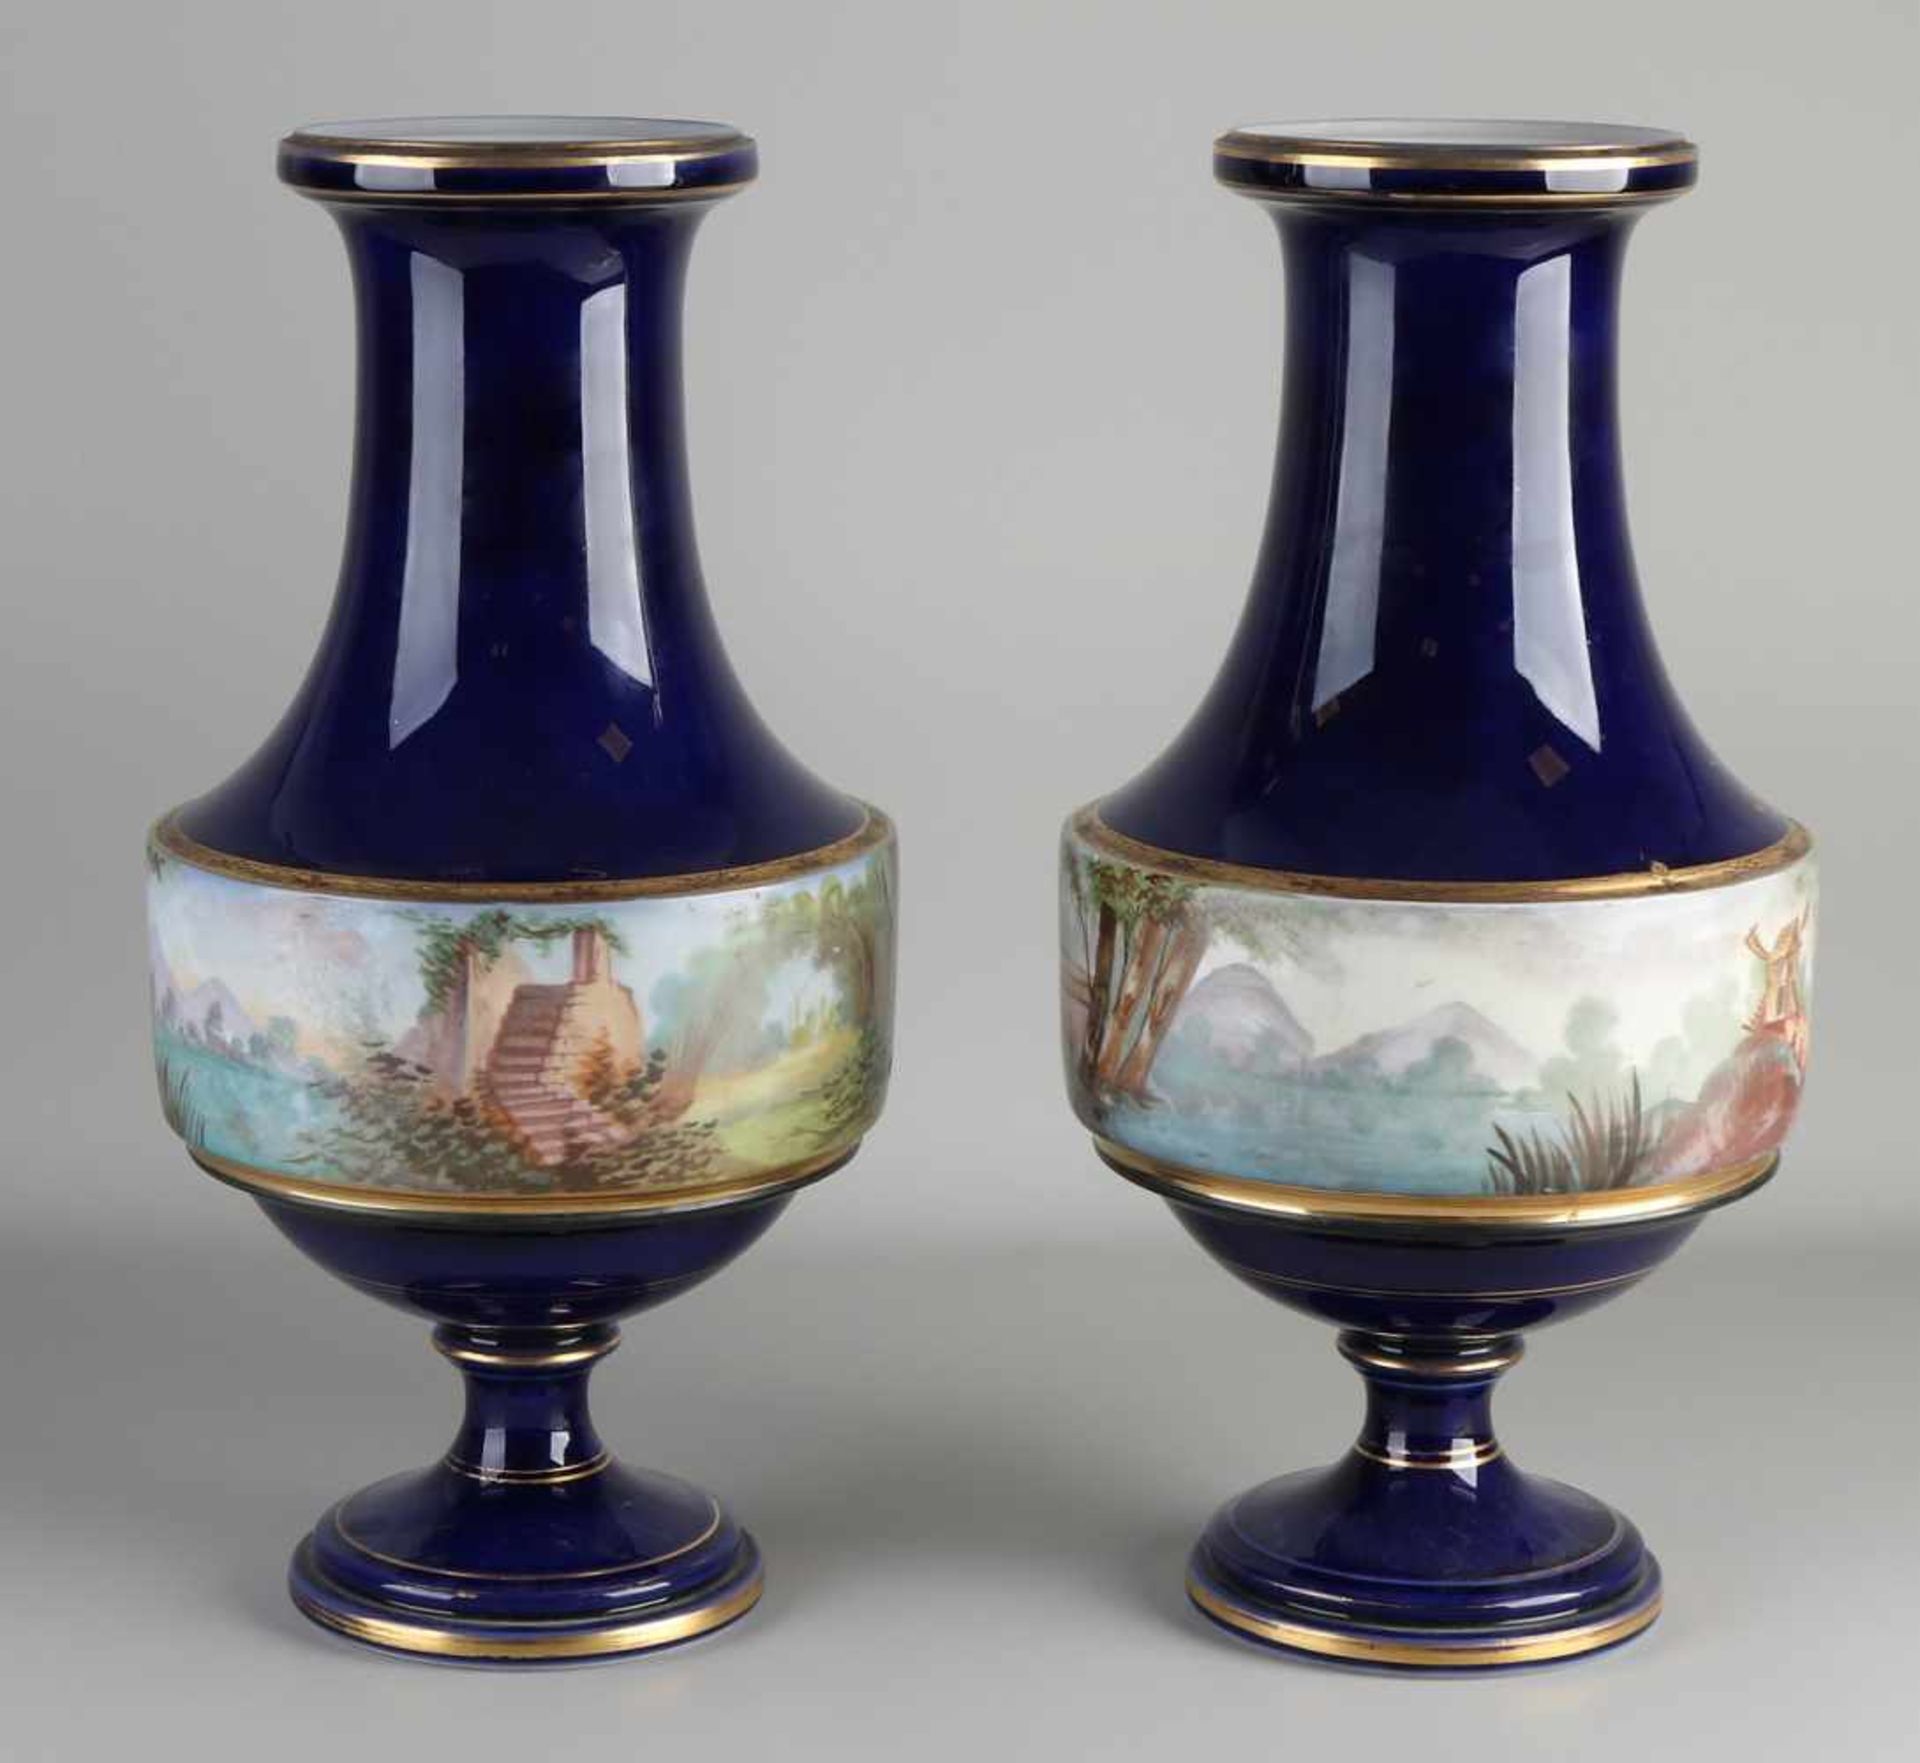 Zwei große antike französische Porzellanvasen mit handgemalter Landschaft / Figuren und Golddekor. - Bild 2 aus 2